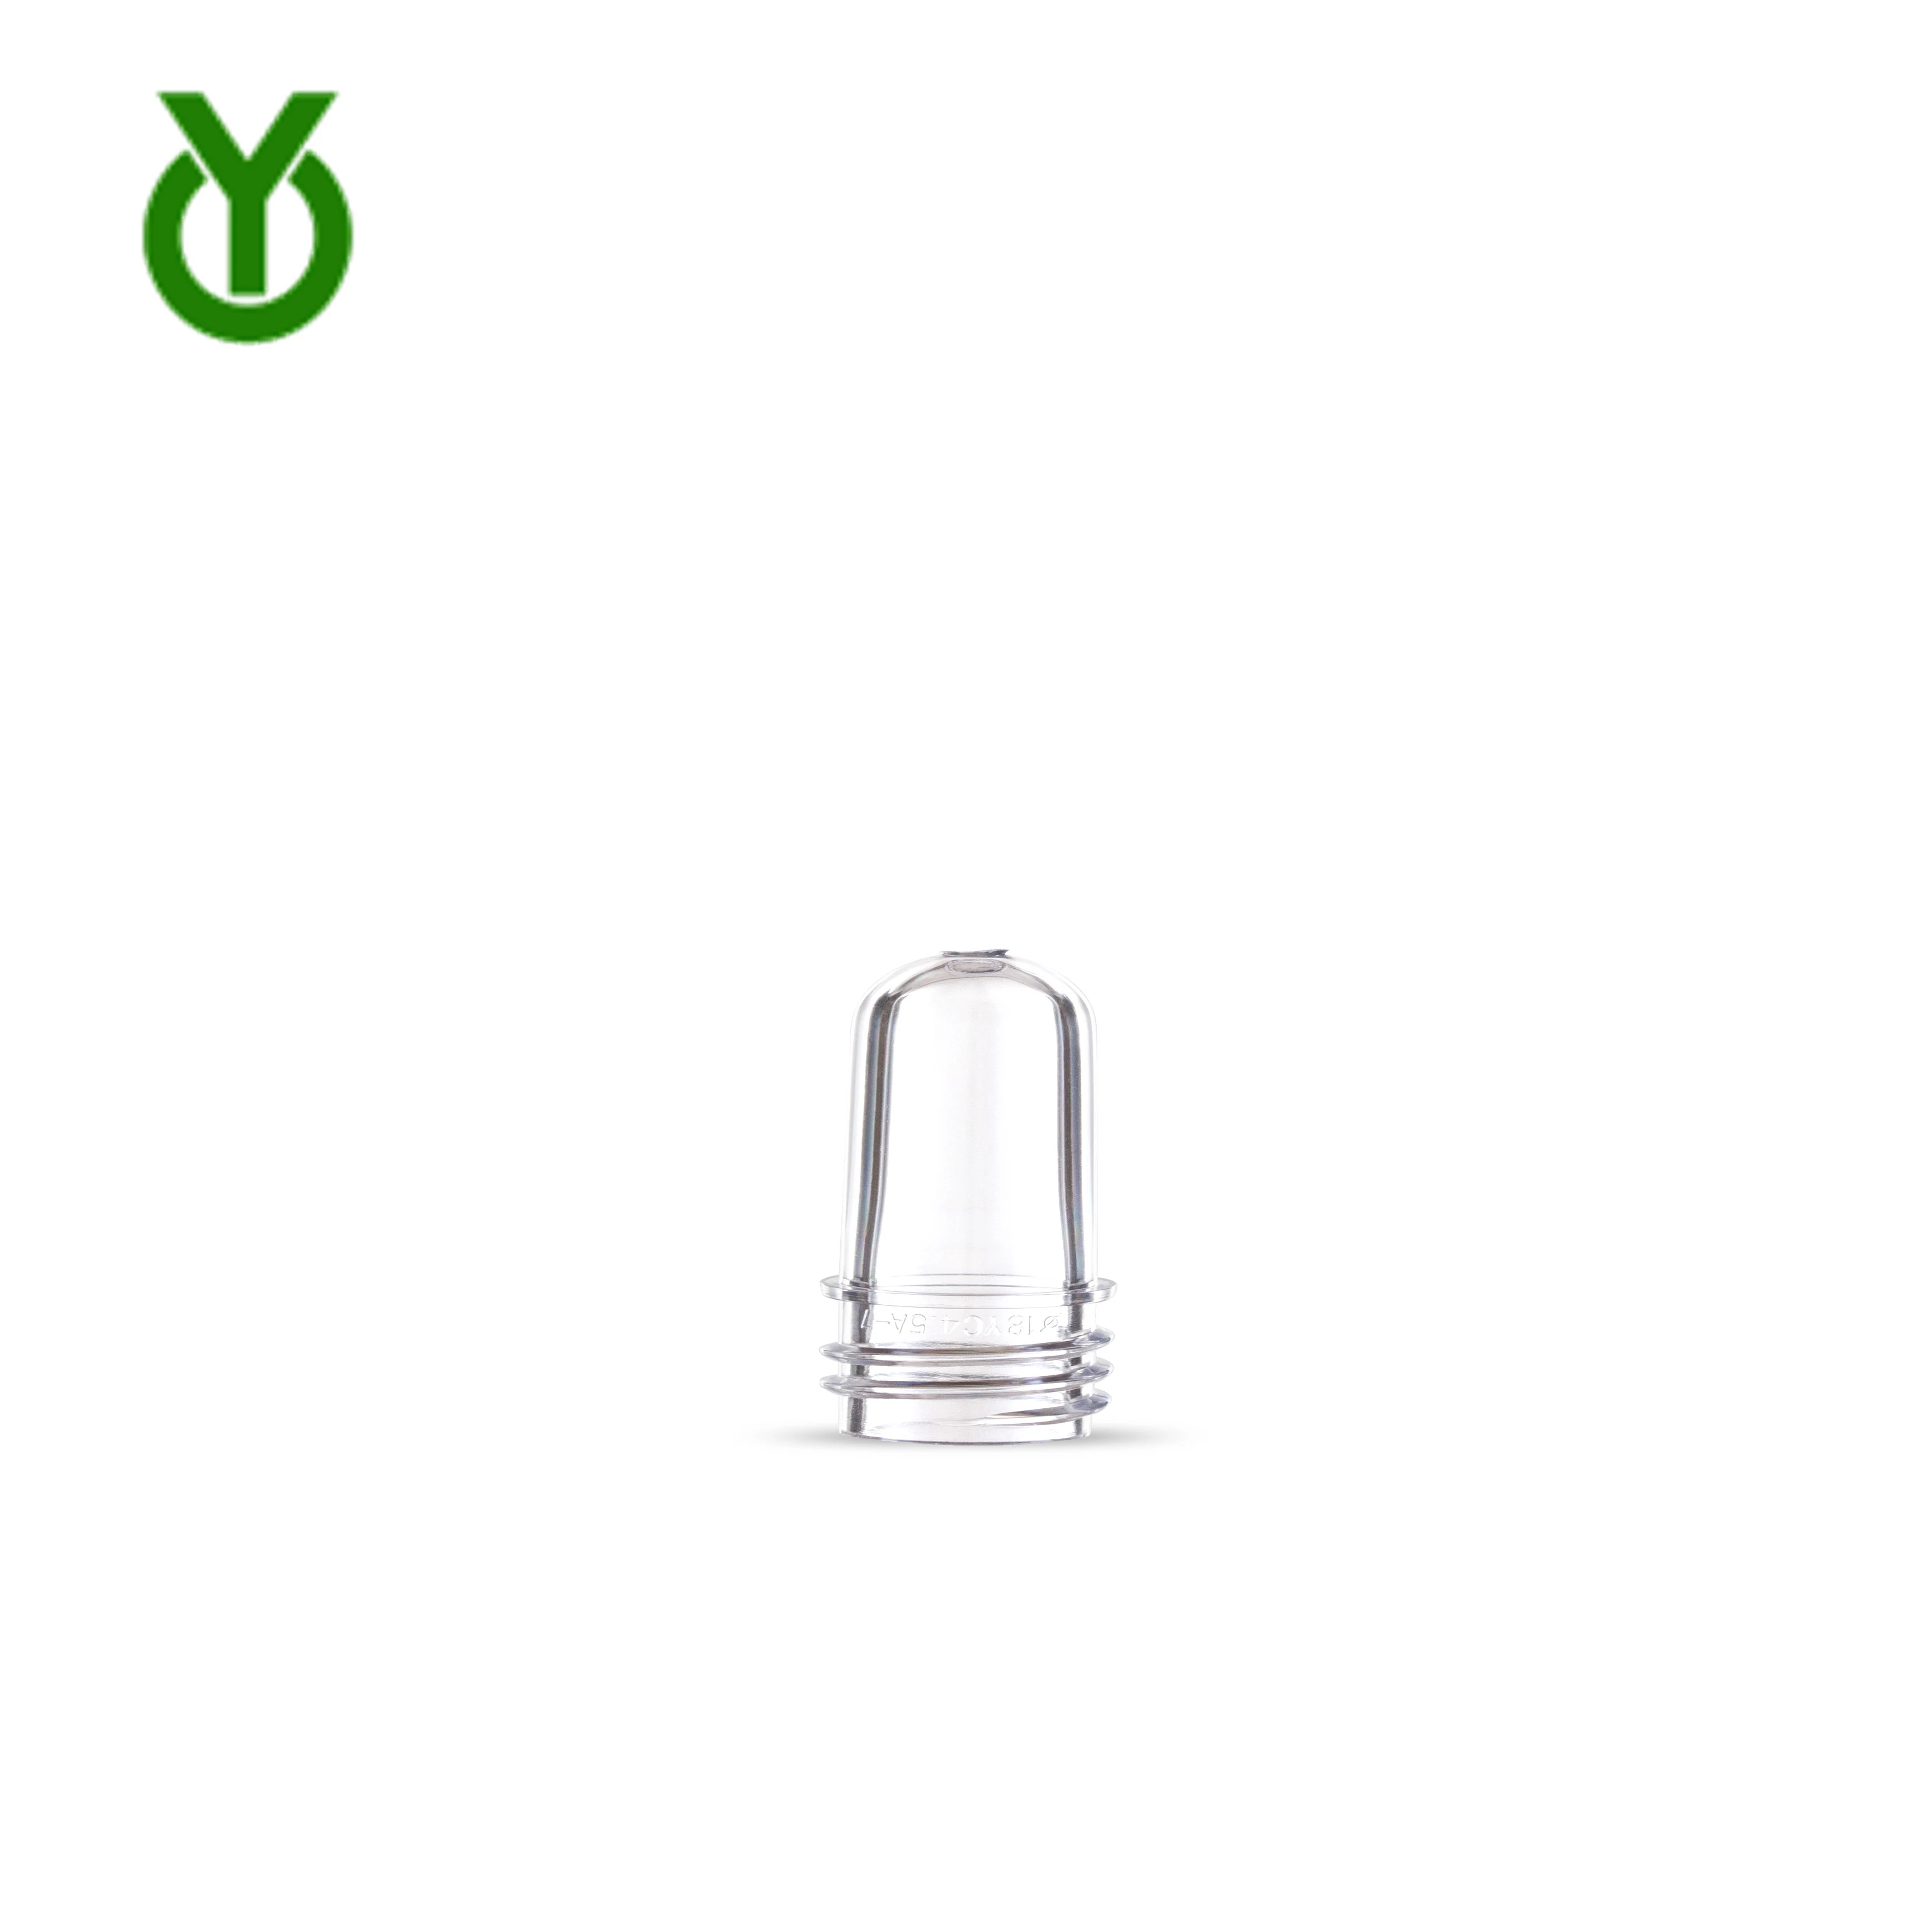 18mm 4,5g realizar Pet botella botella de plástico para Cosmética frasco de perfume de buena calidad como la botella de cristal